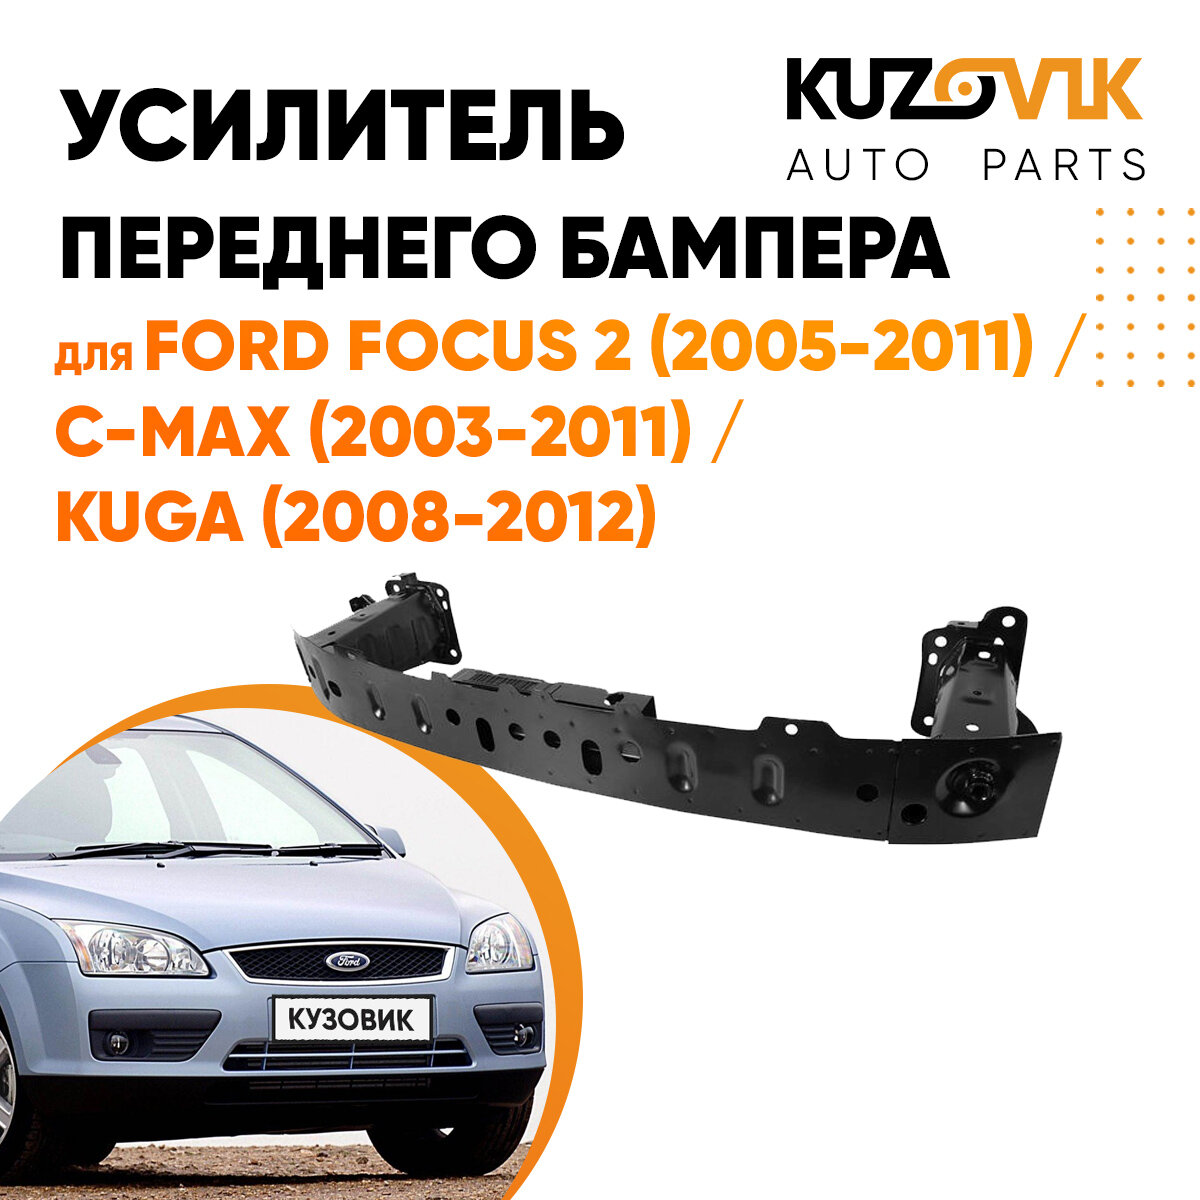 Усилитель переднего бампера для Форд Фокус Ford Focus 2 (2005-2011), C-Max Си - Макс (2003-2011), Kuga Куга (2008-2012) балка абсорбер бампера